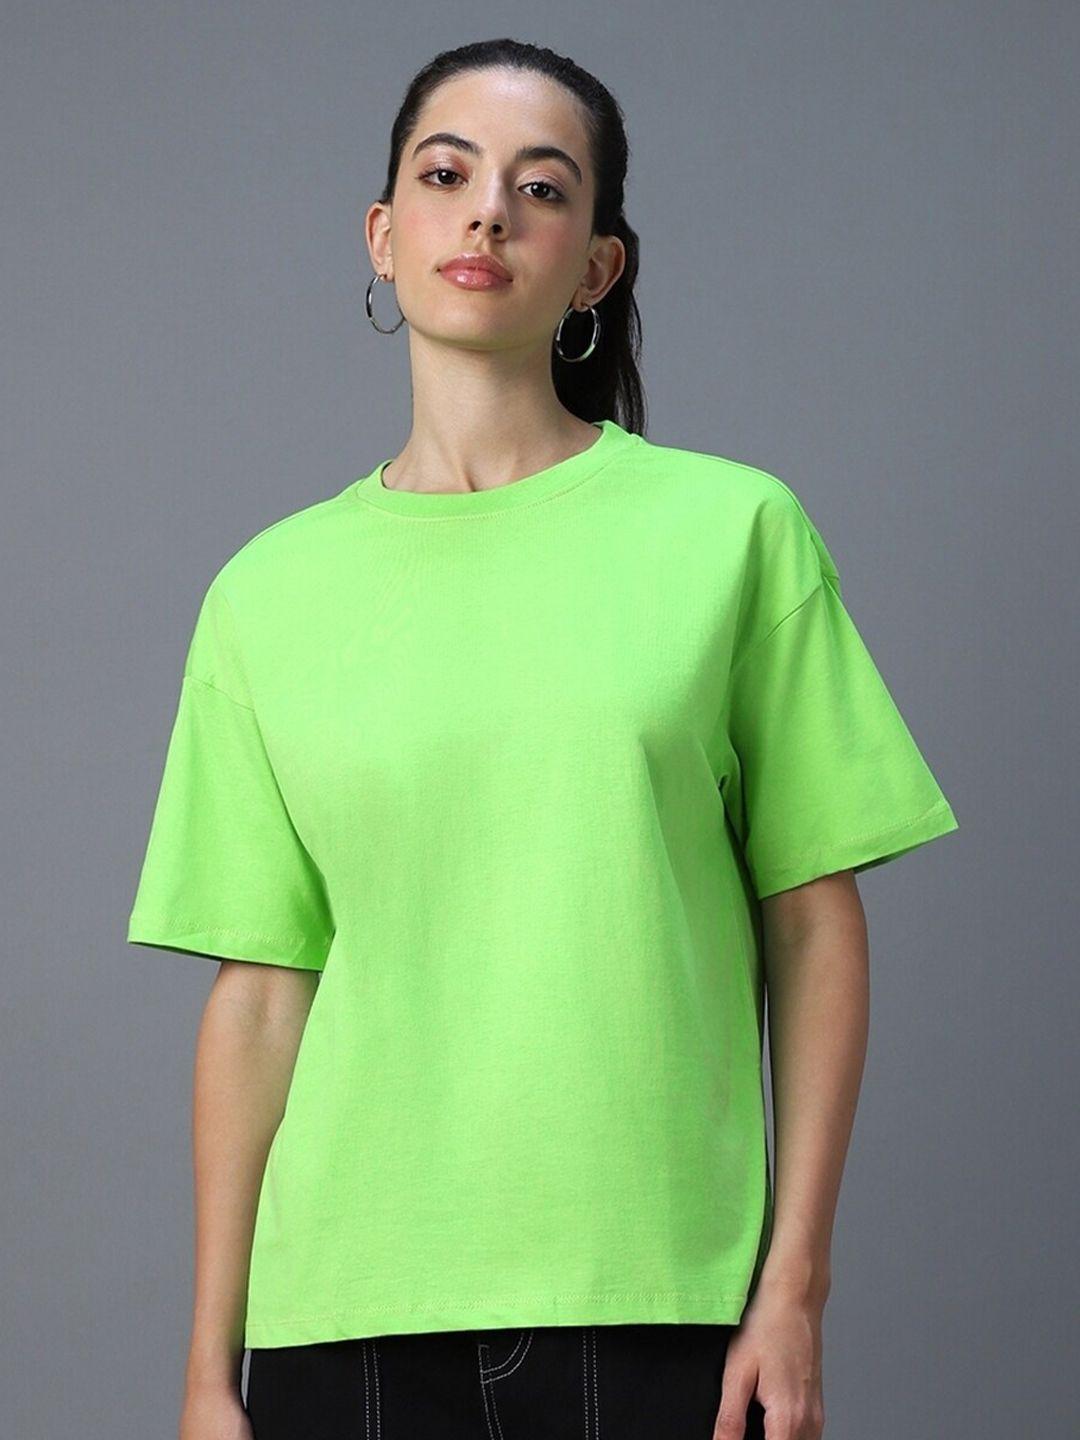 bewakoof women green t-shirt